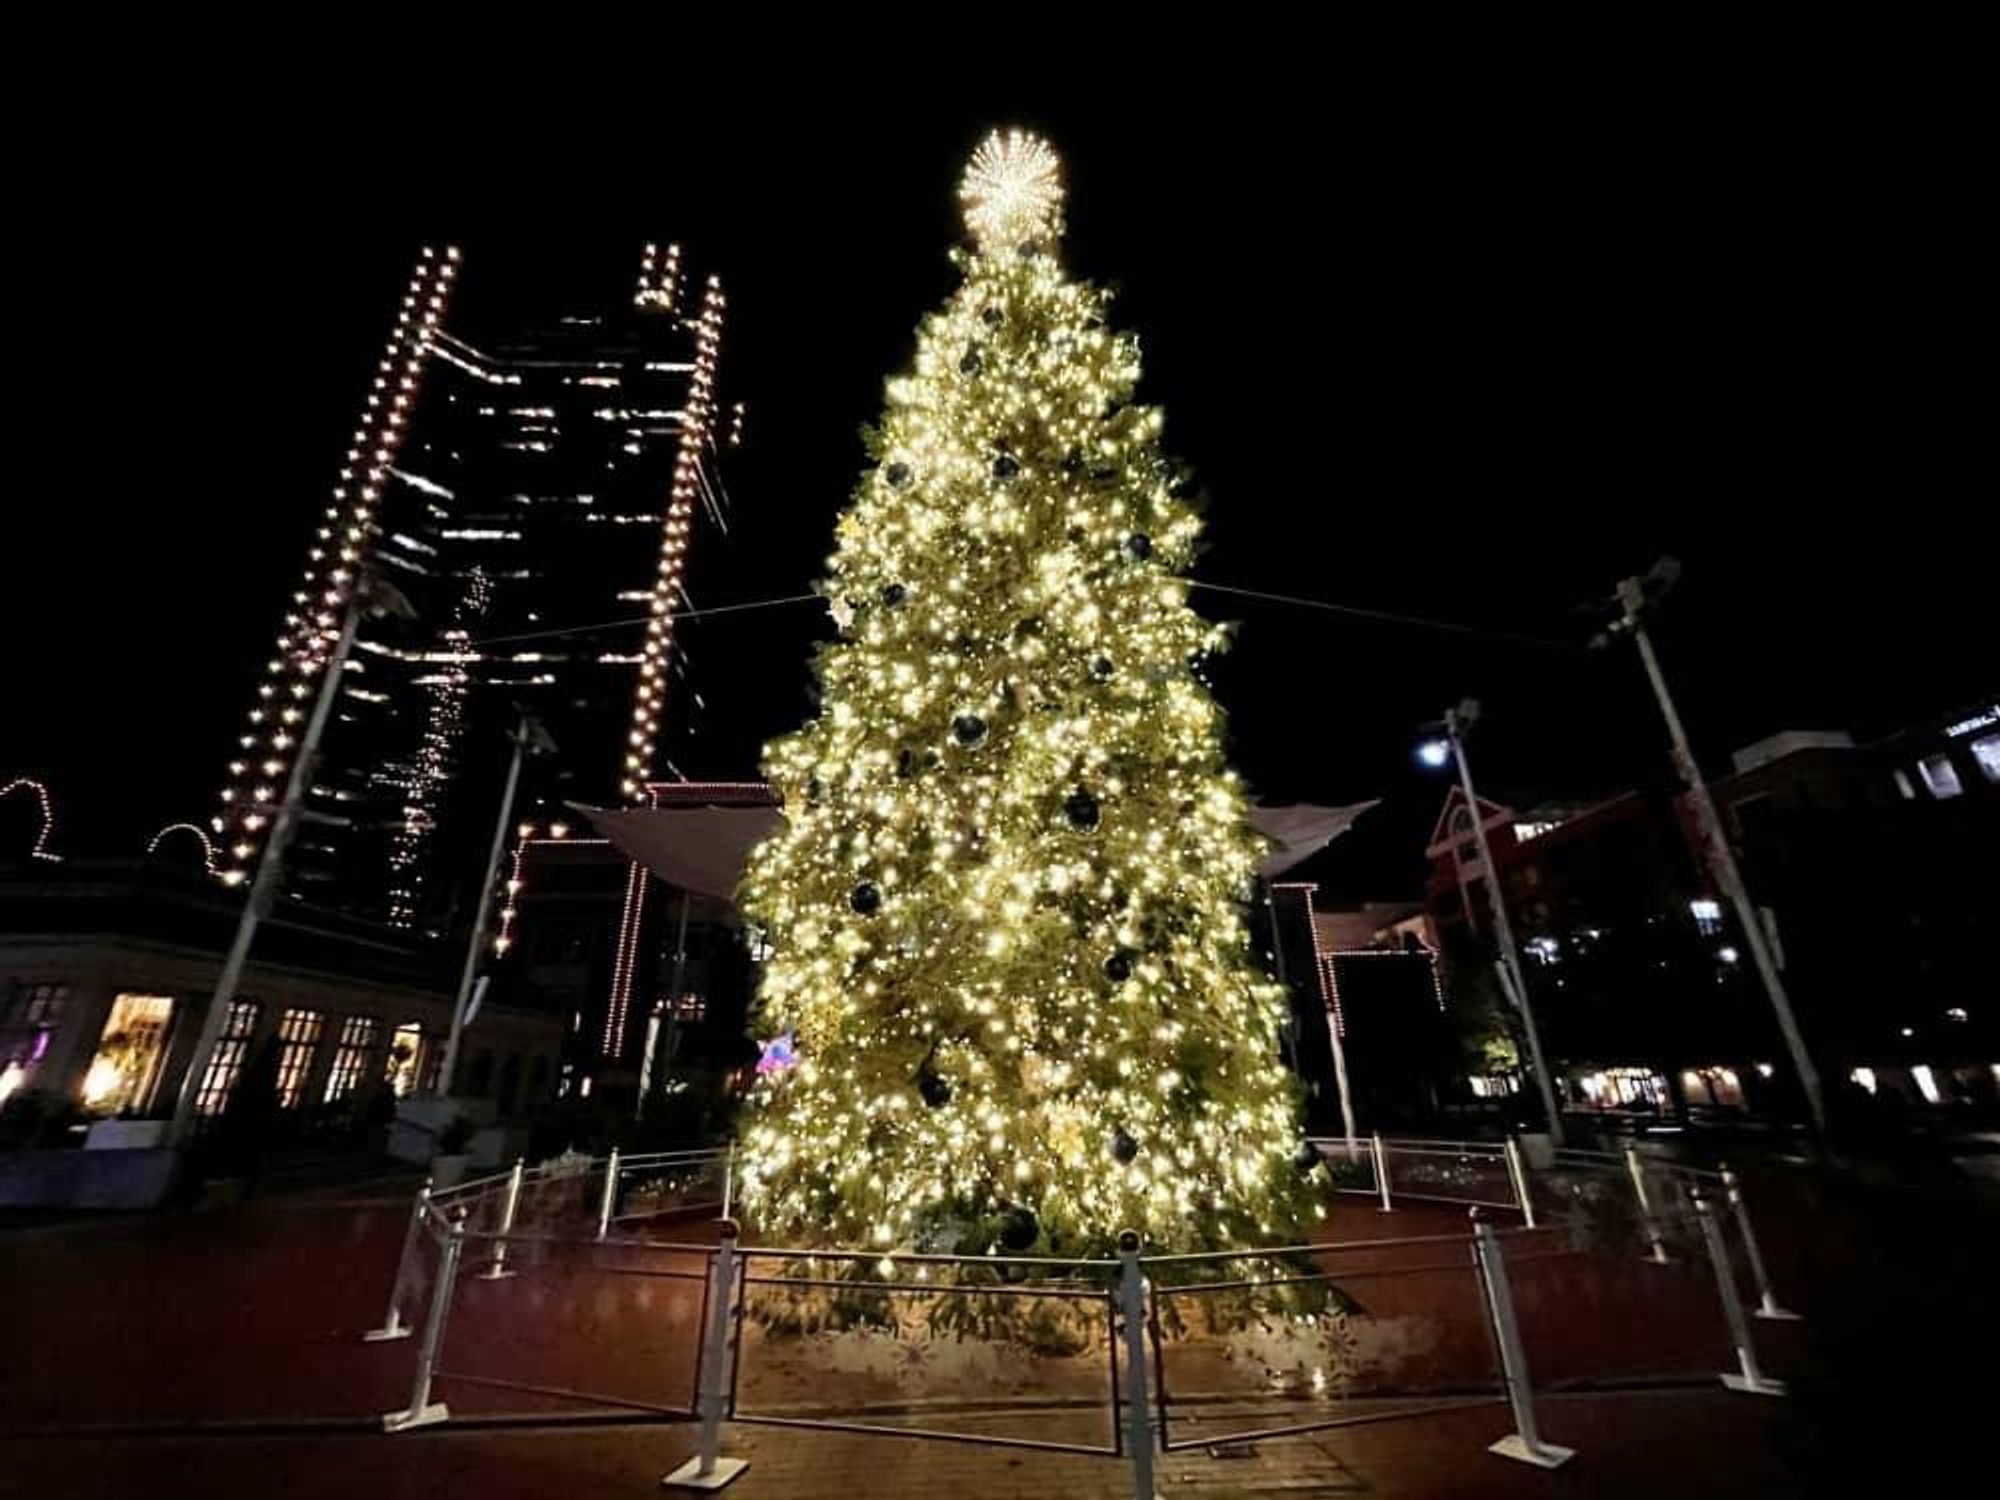 Sundance Square Christmas tree 2020